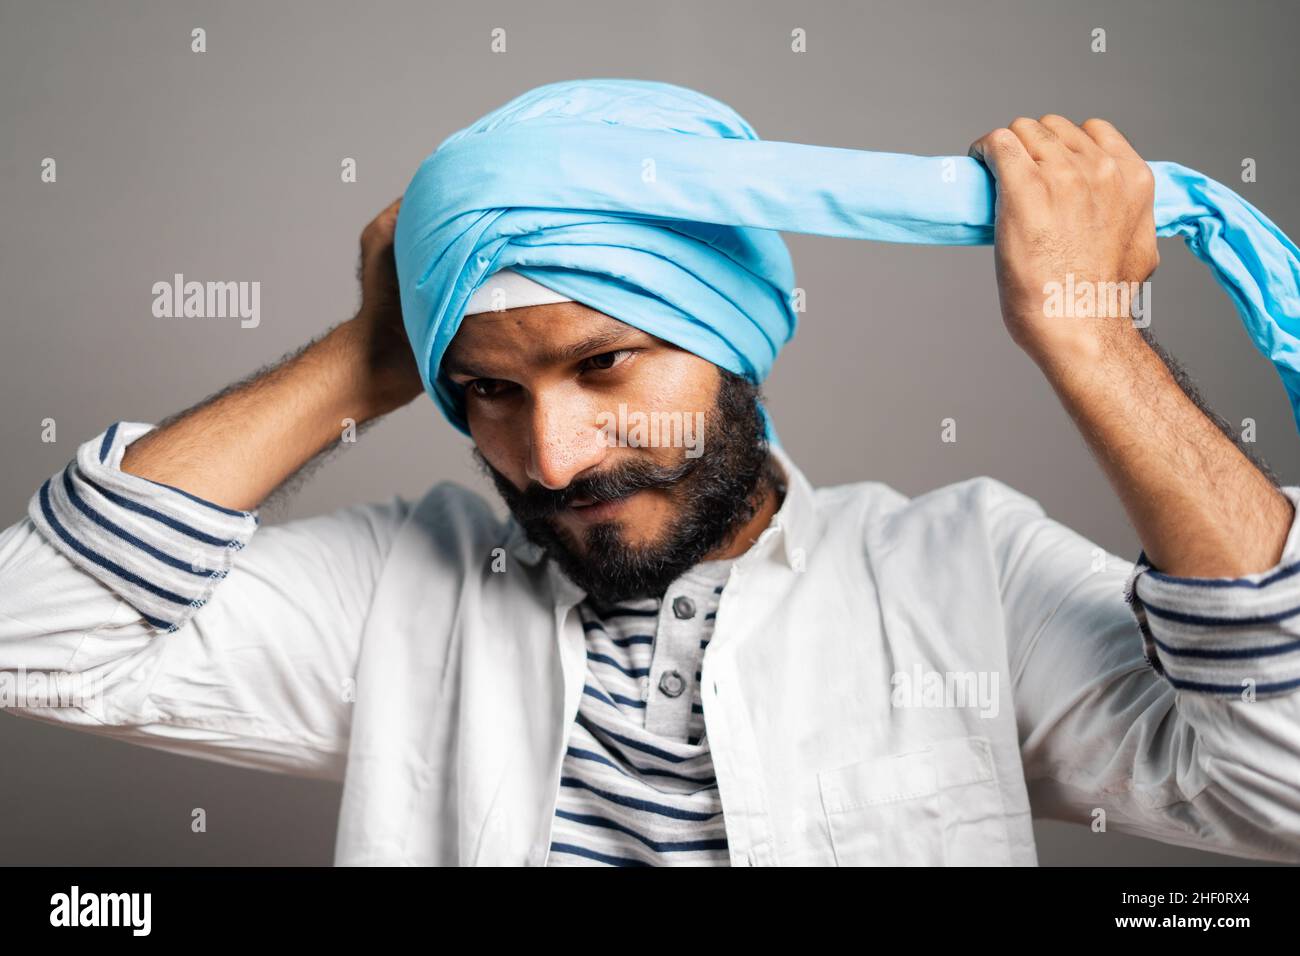 Hombre Indio Con Un Turbante Foto de archivo editorial - Imagen de  hinduismo, asia: 75768603